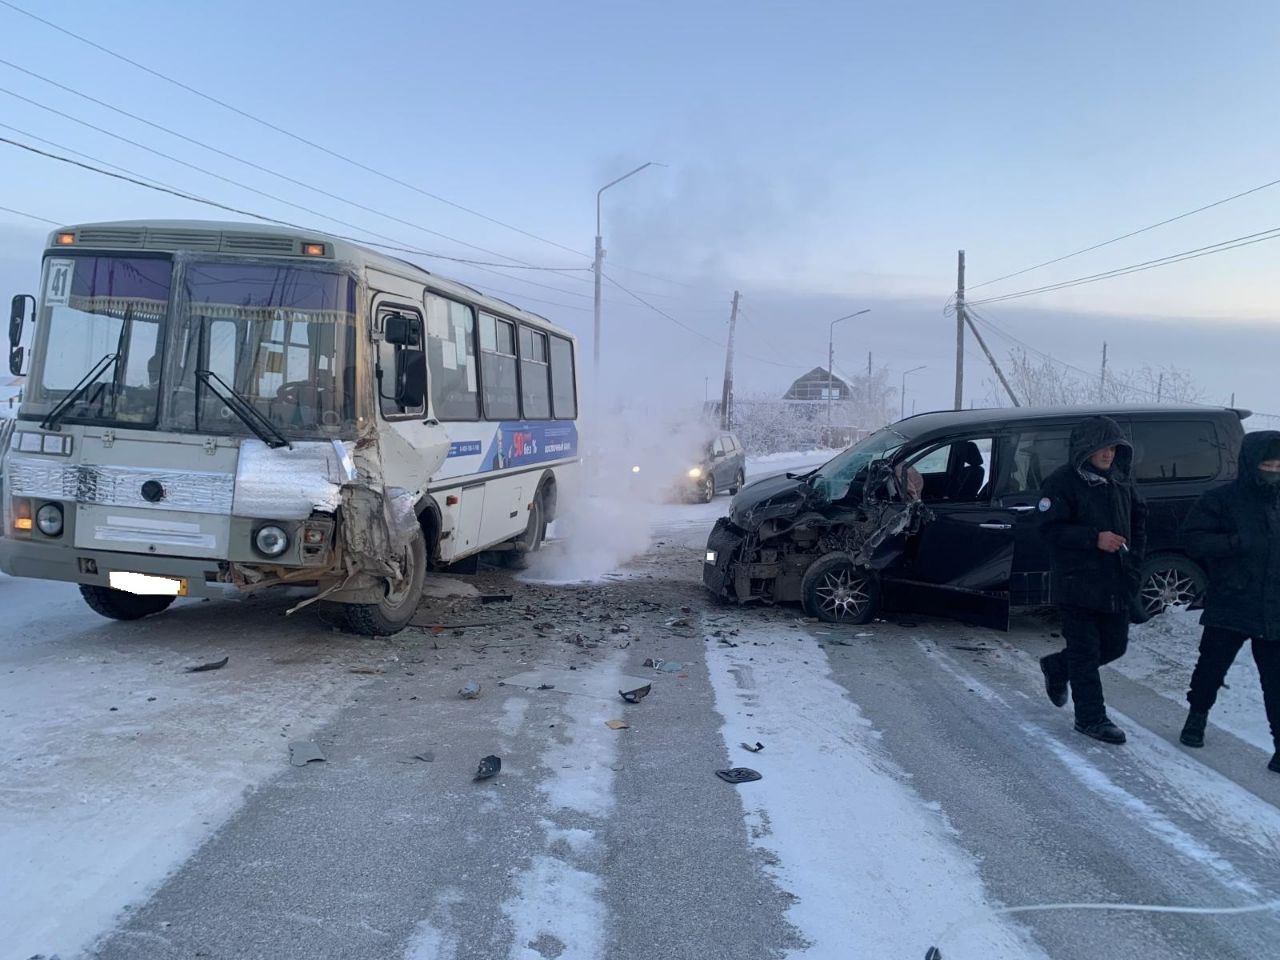 Ребенок пострадал при столкновении легкового автомобиля с автобусом в Якутске